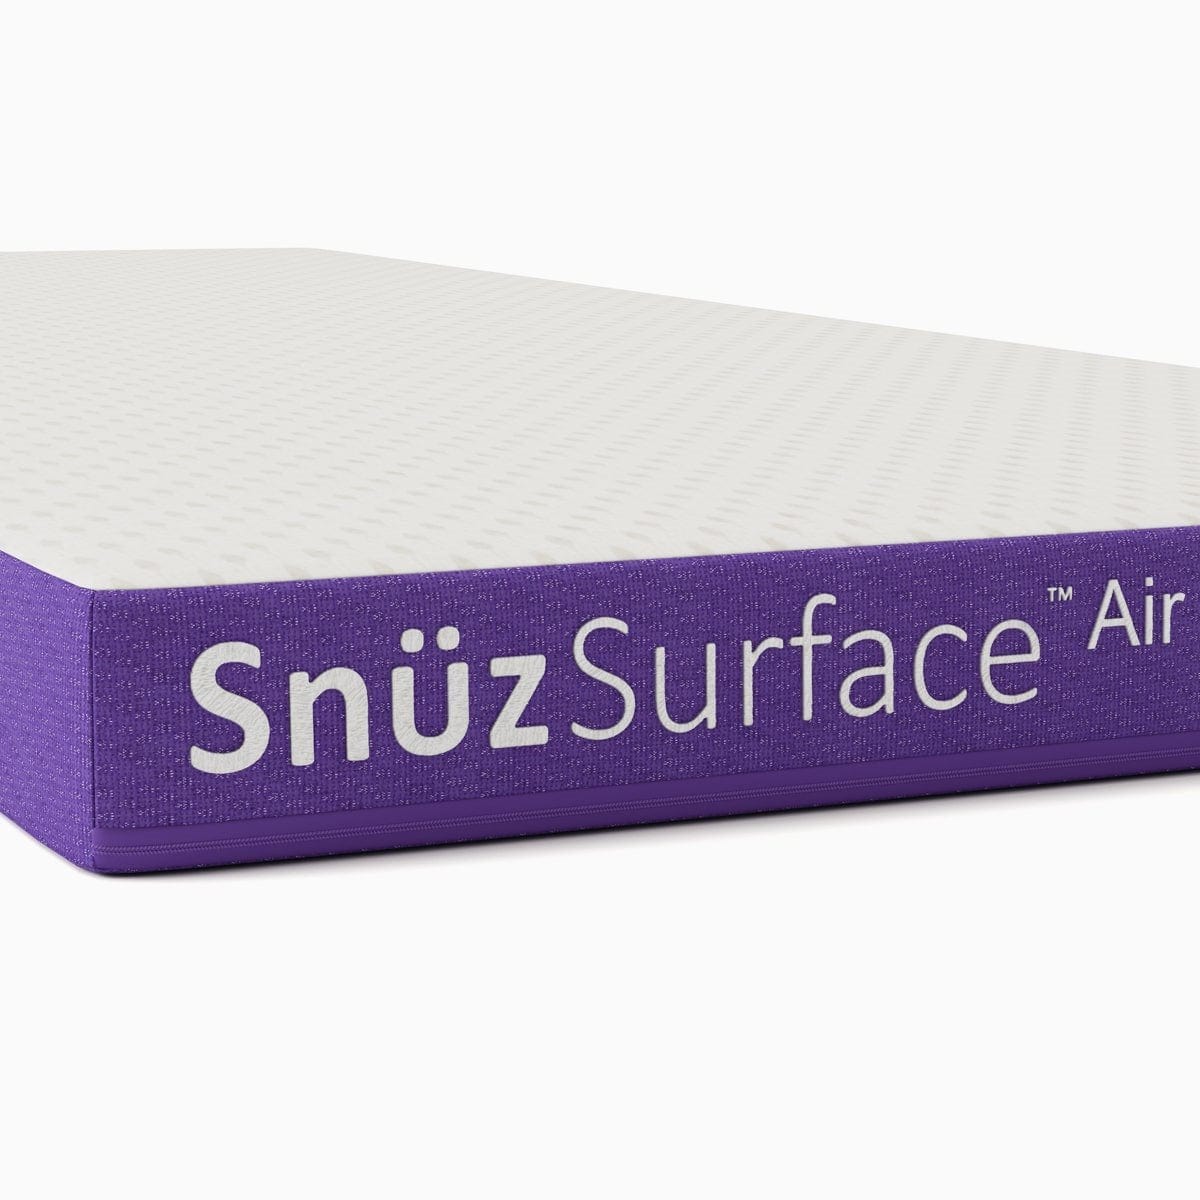 SnuzSurface Air Mattress - Pre order - Mattress